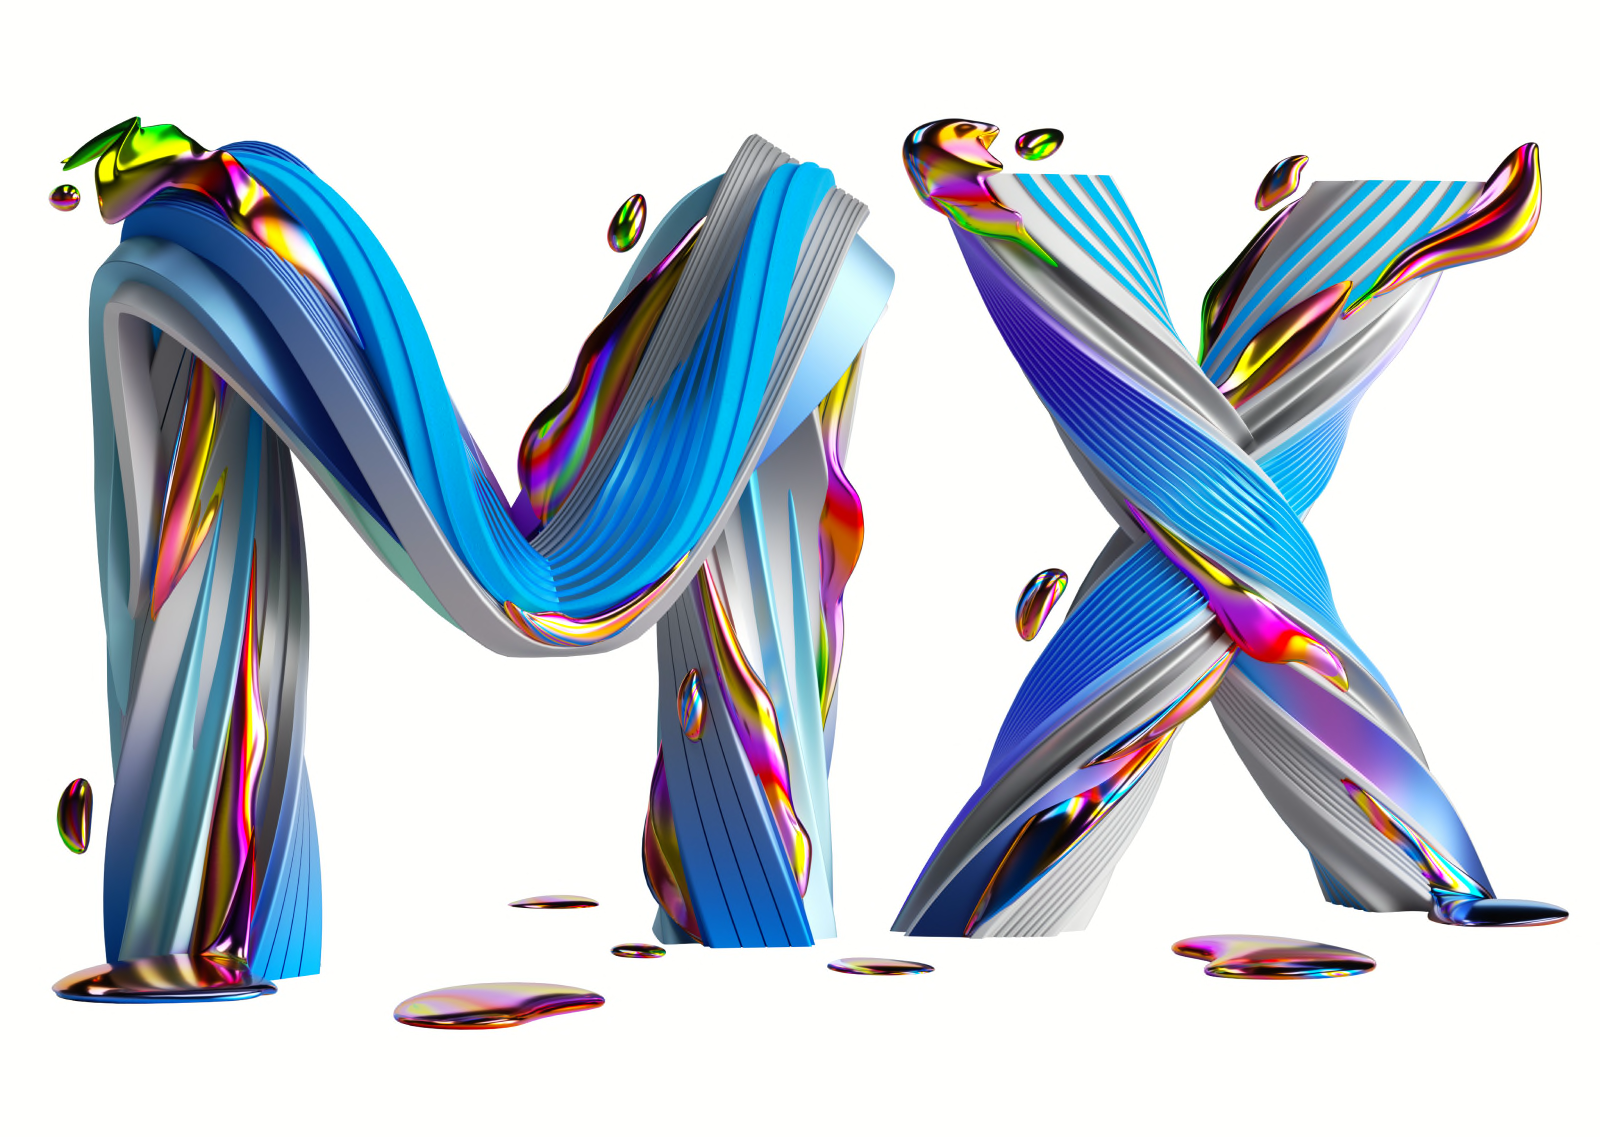 MX Series-pictogram